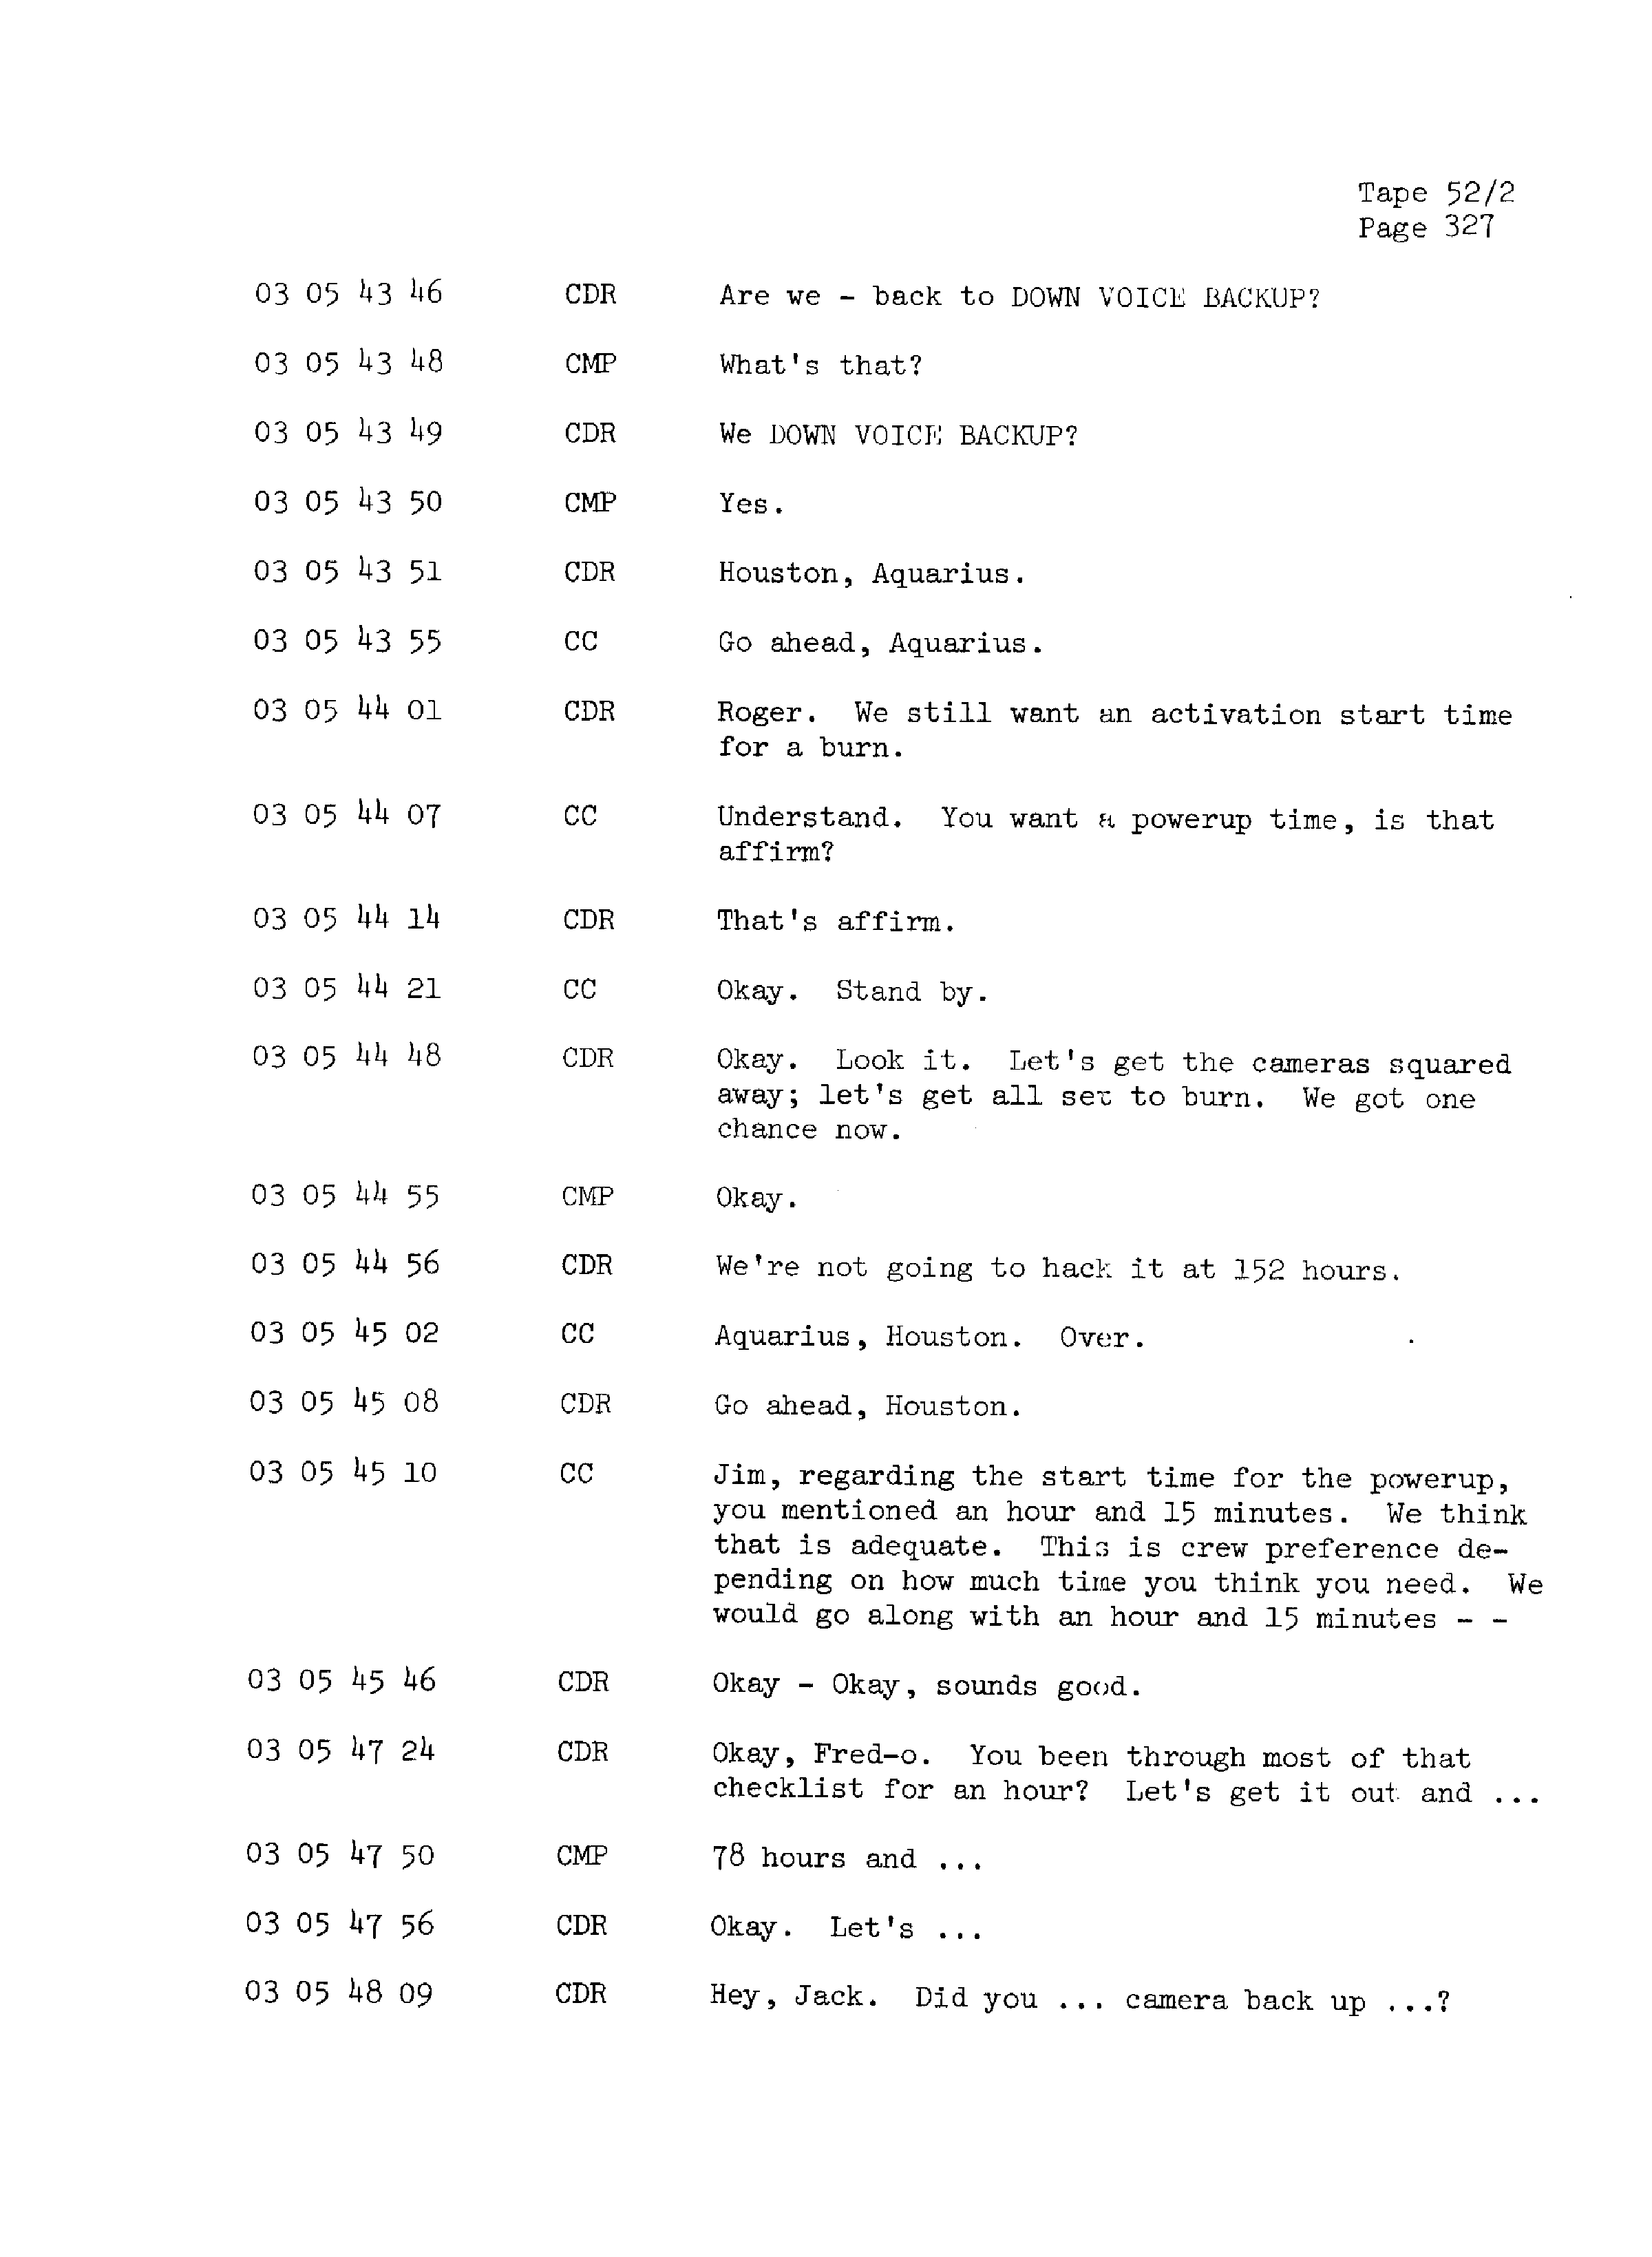 Page 334 of Apollo 13’s original transcript